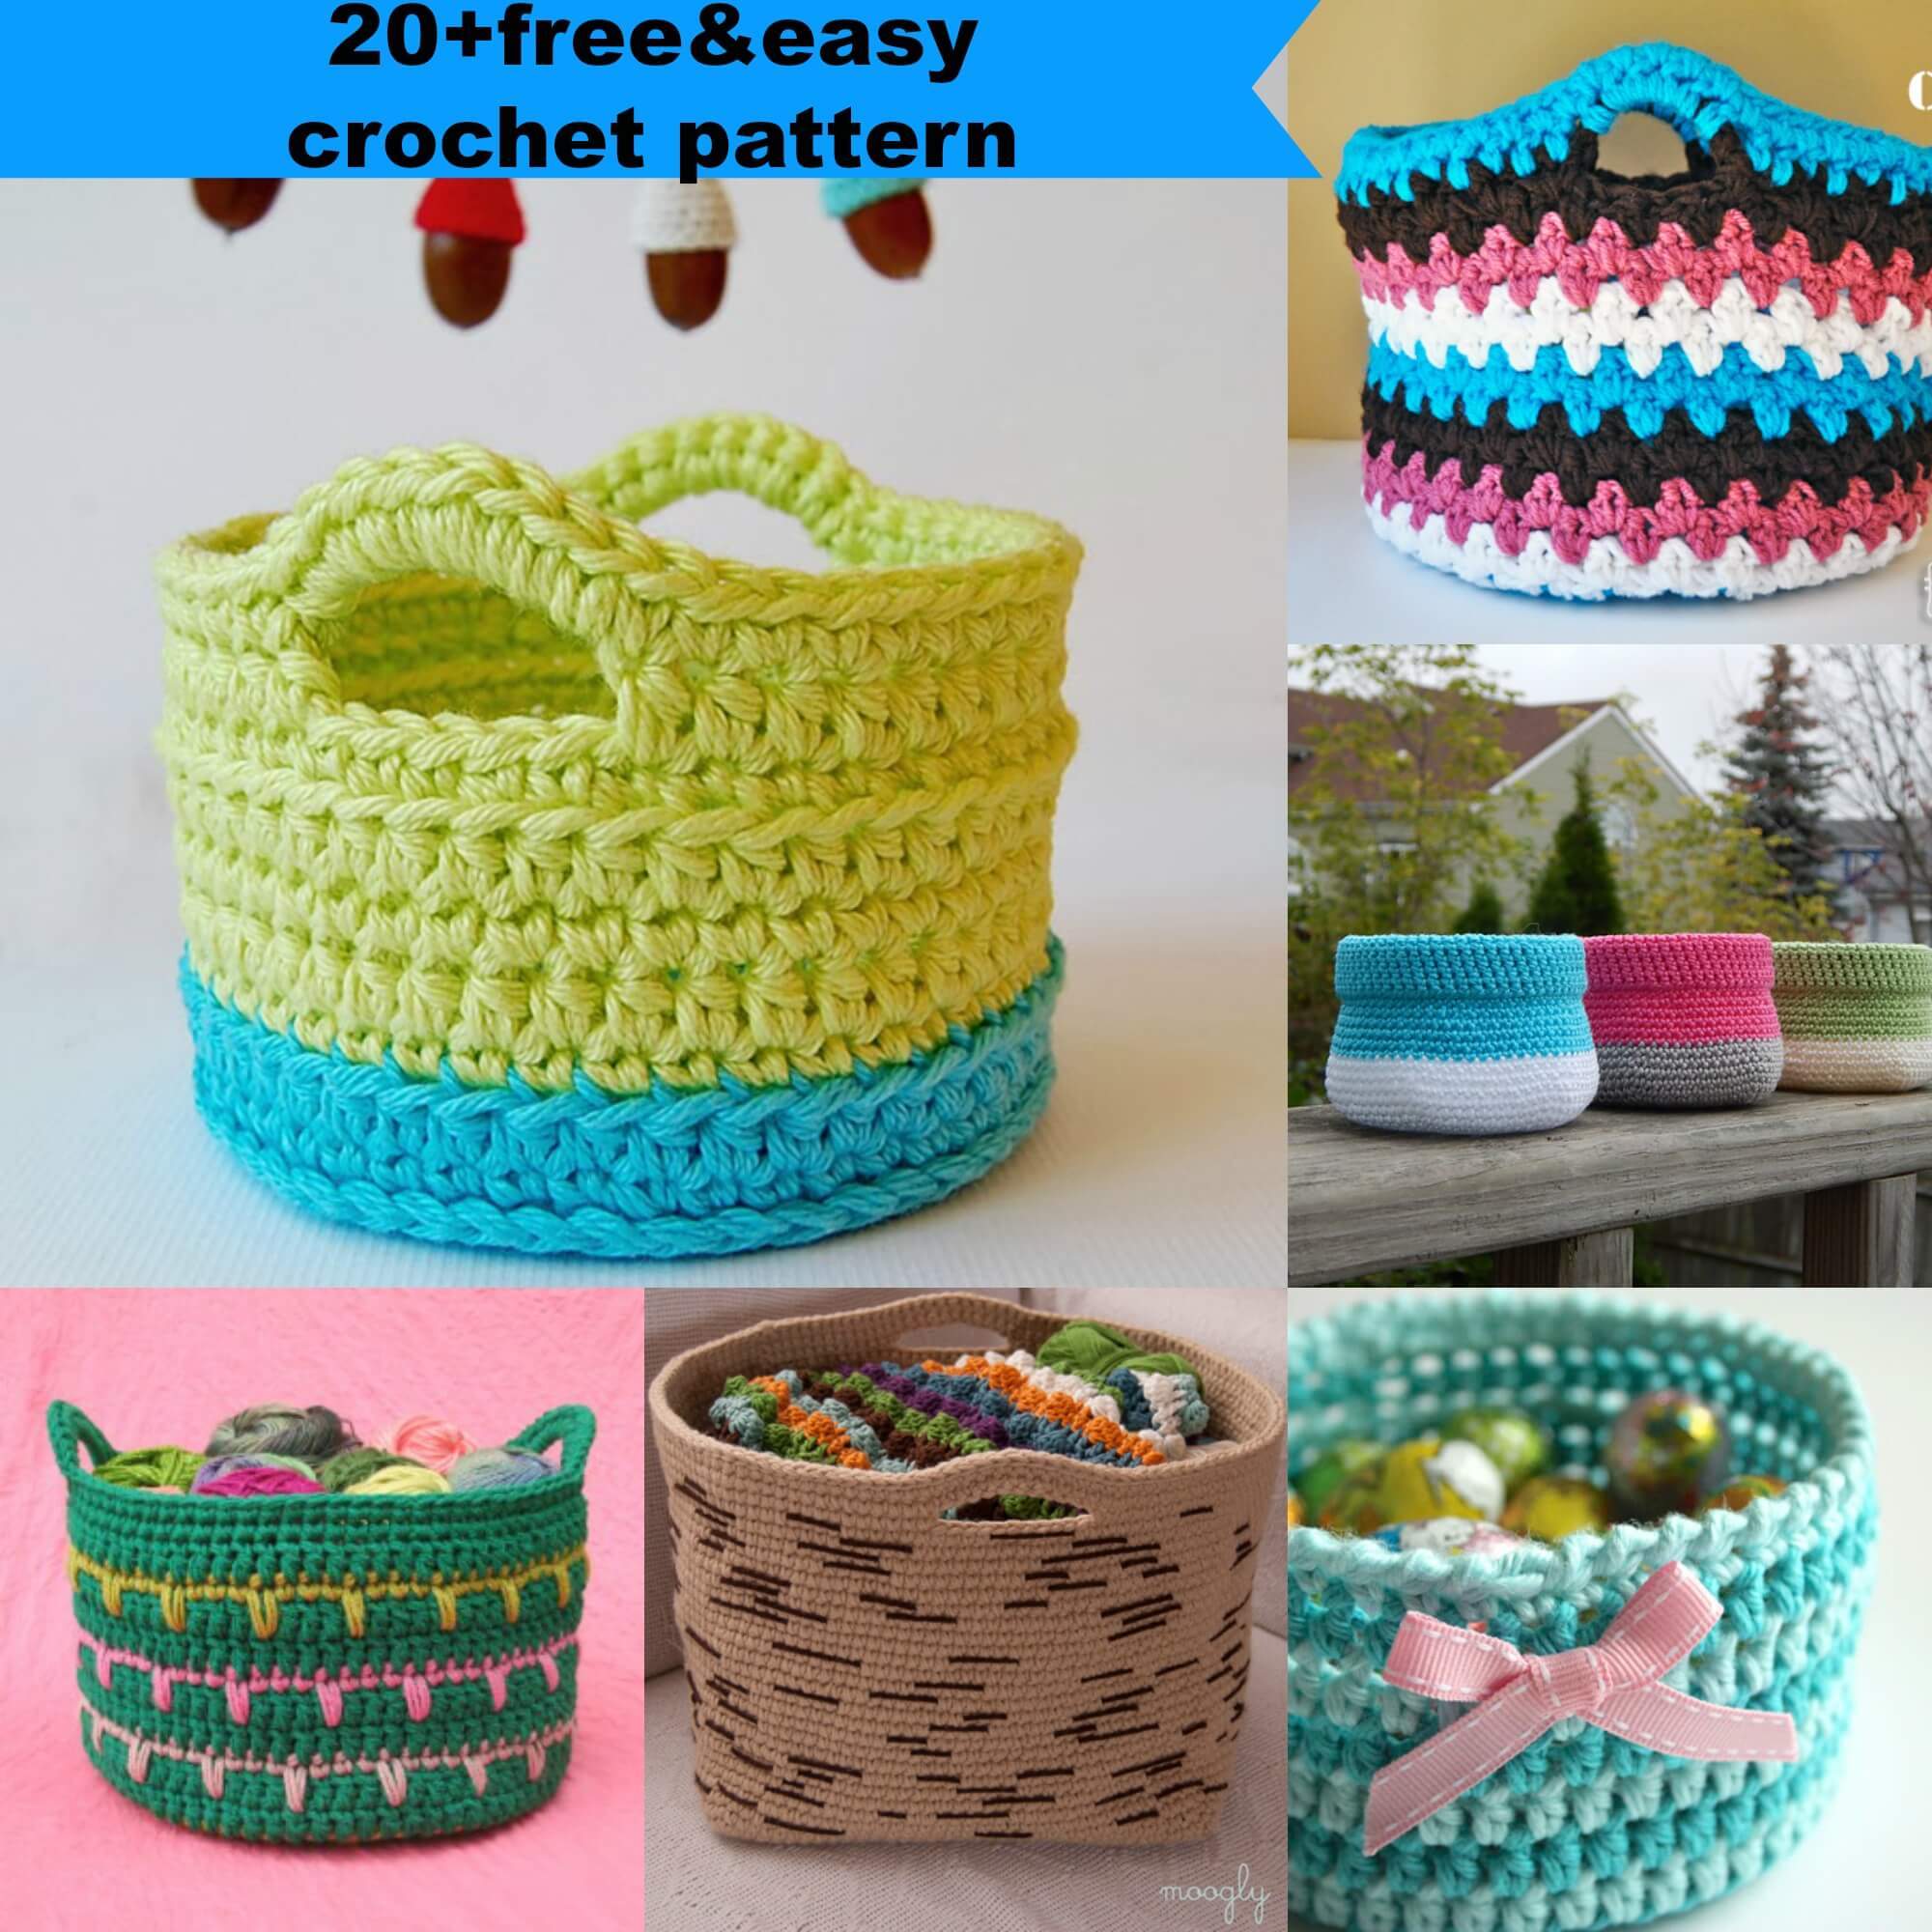 crochet basket pattern 23 free u0026easy crochet baskets patterns SAOIDBD